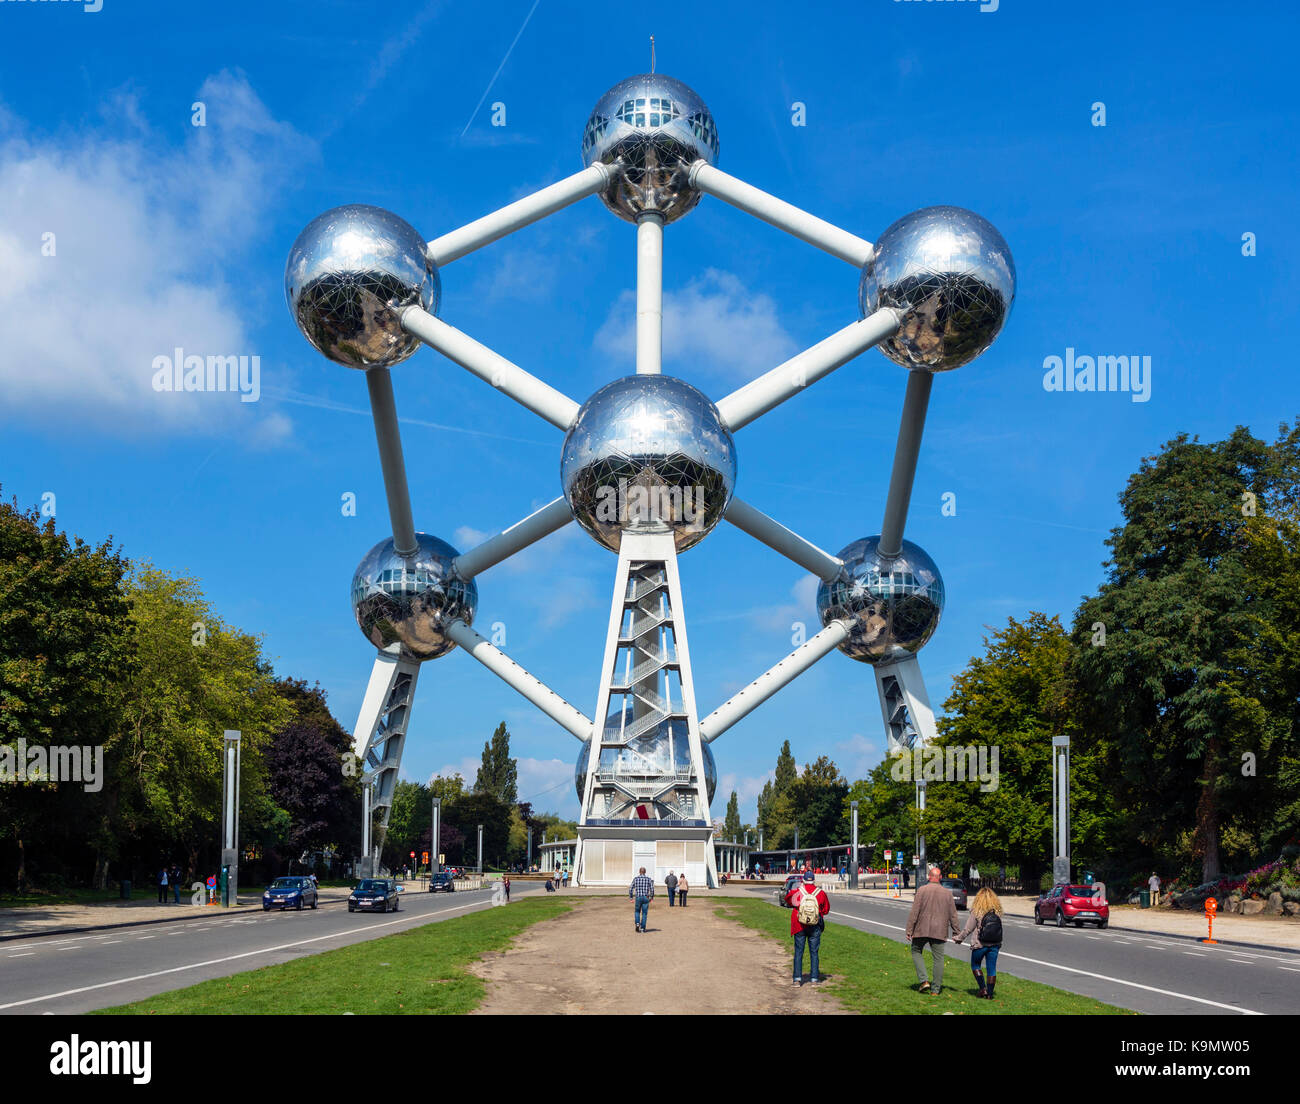 Atomium, Brussels, Belgium Stock Photo